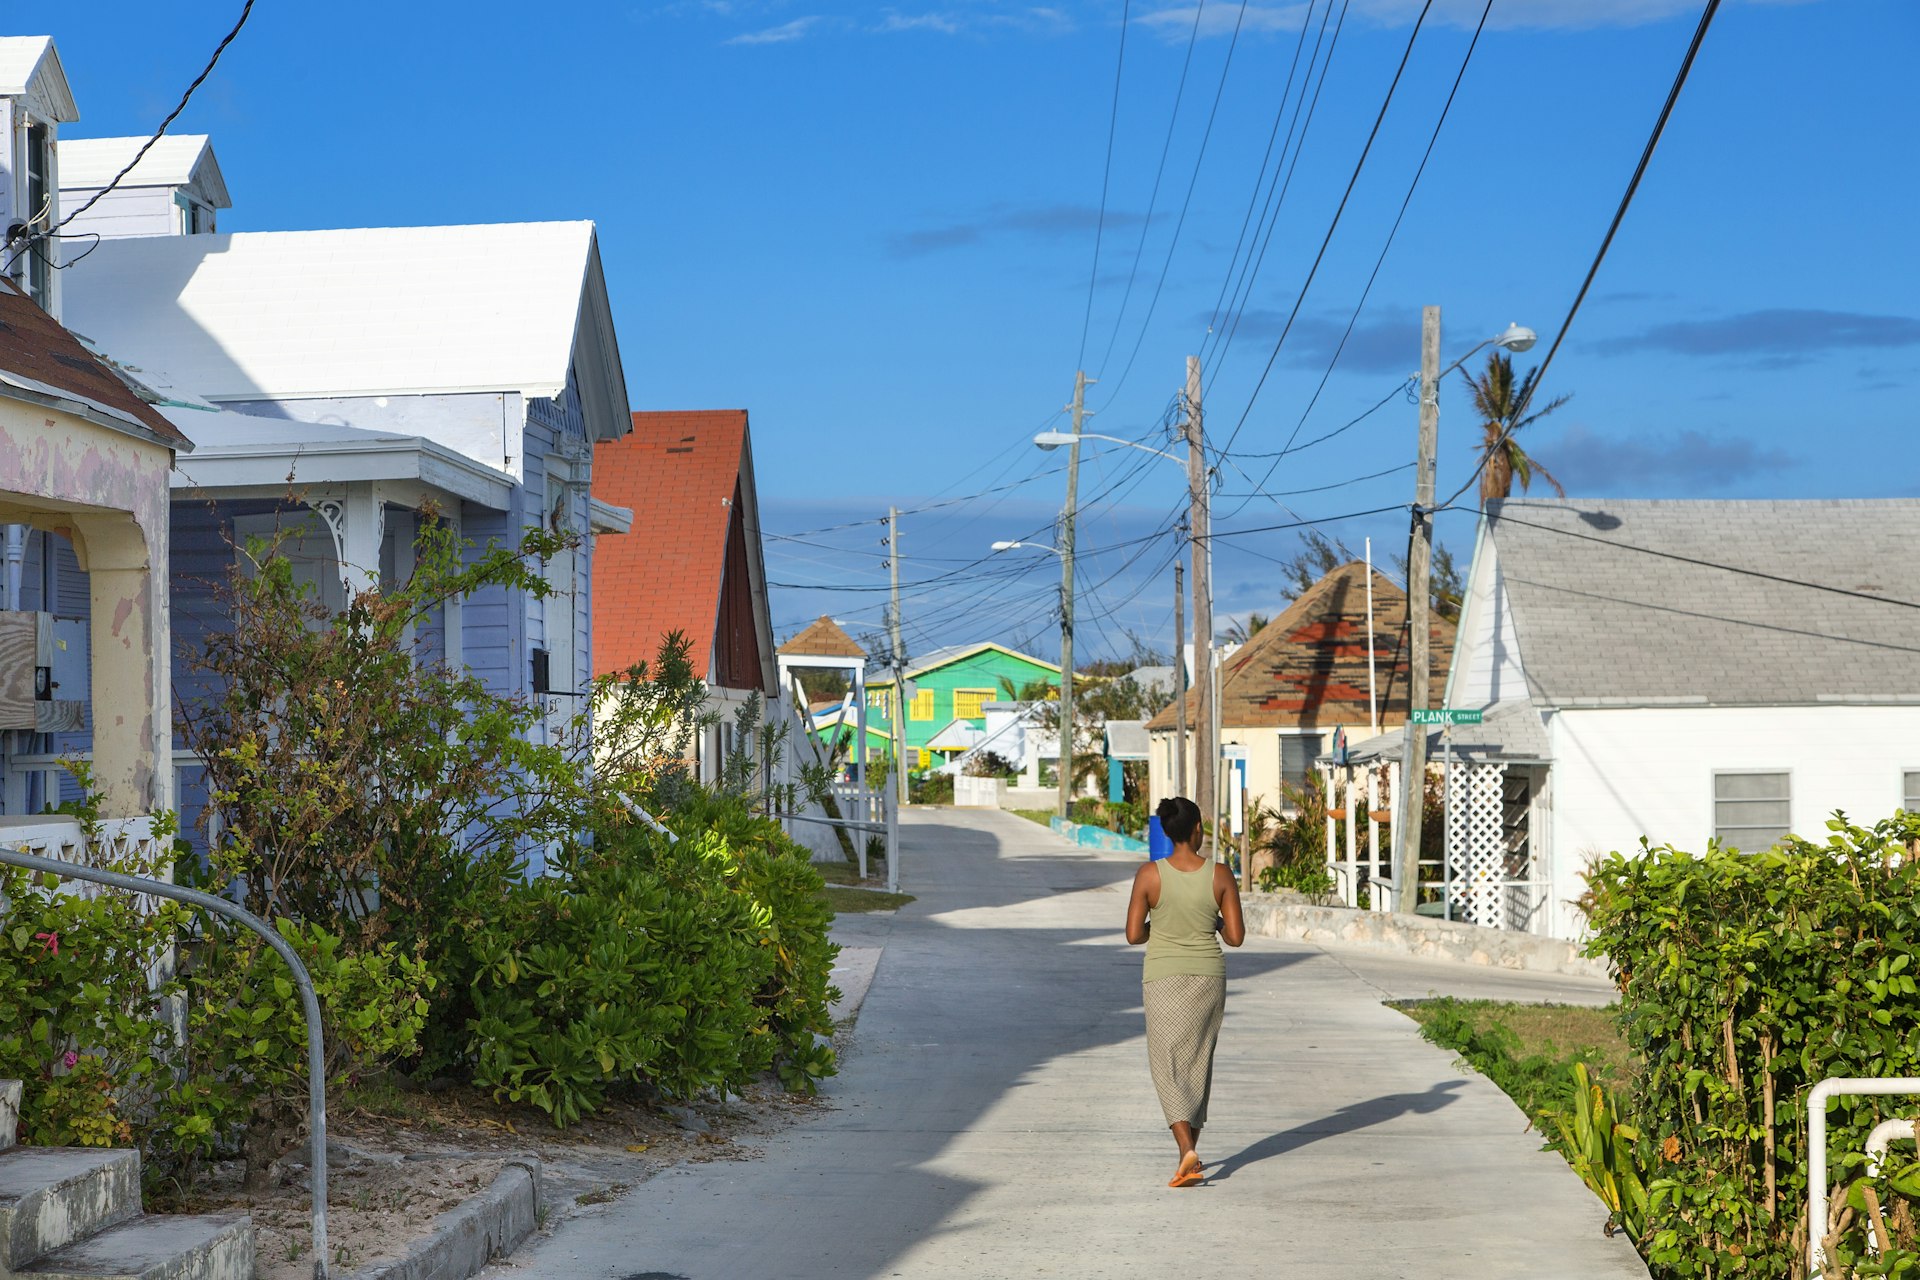 Bahamas, Eleuthera Island, Current Village